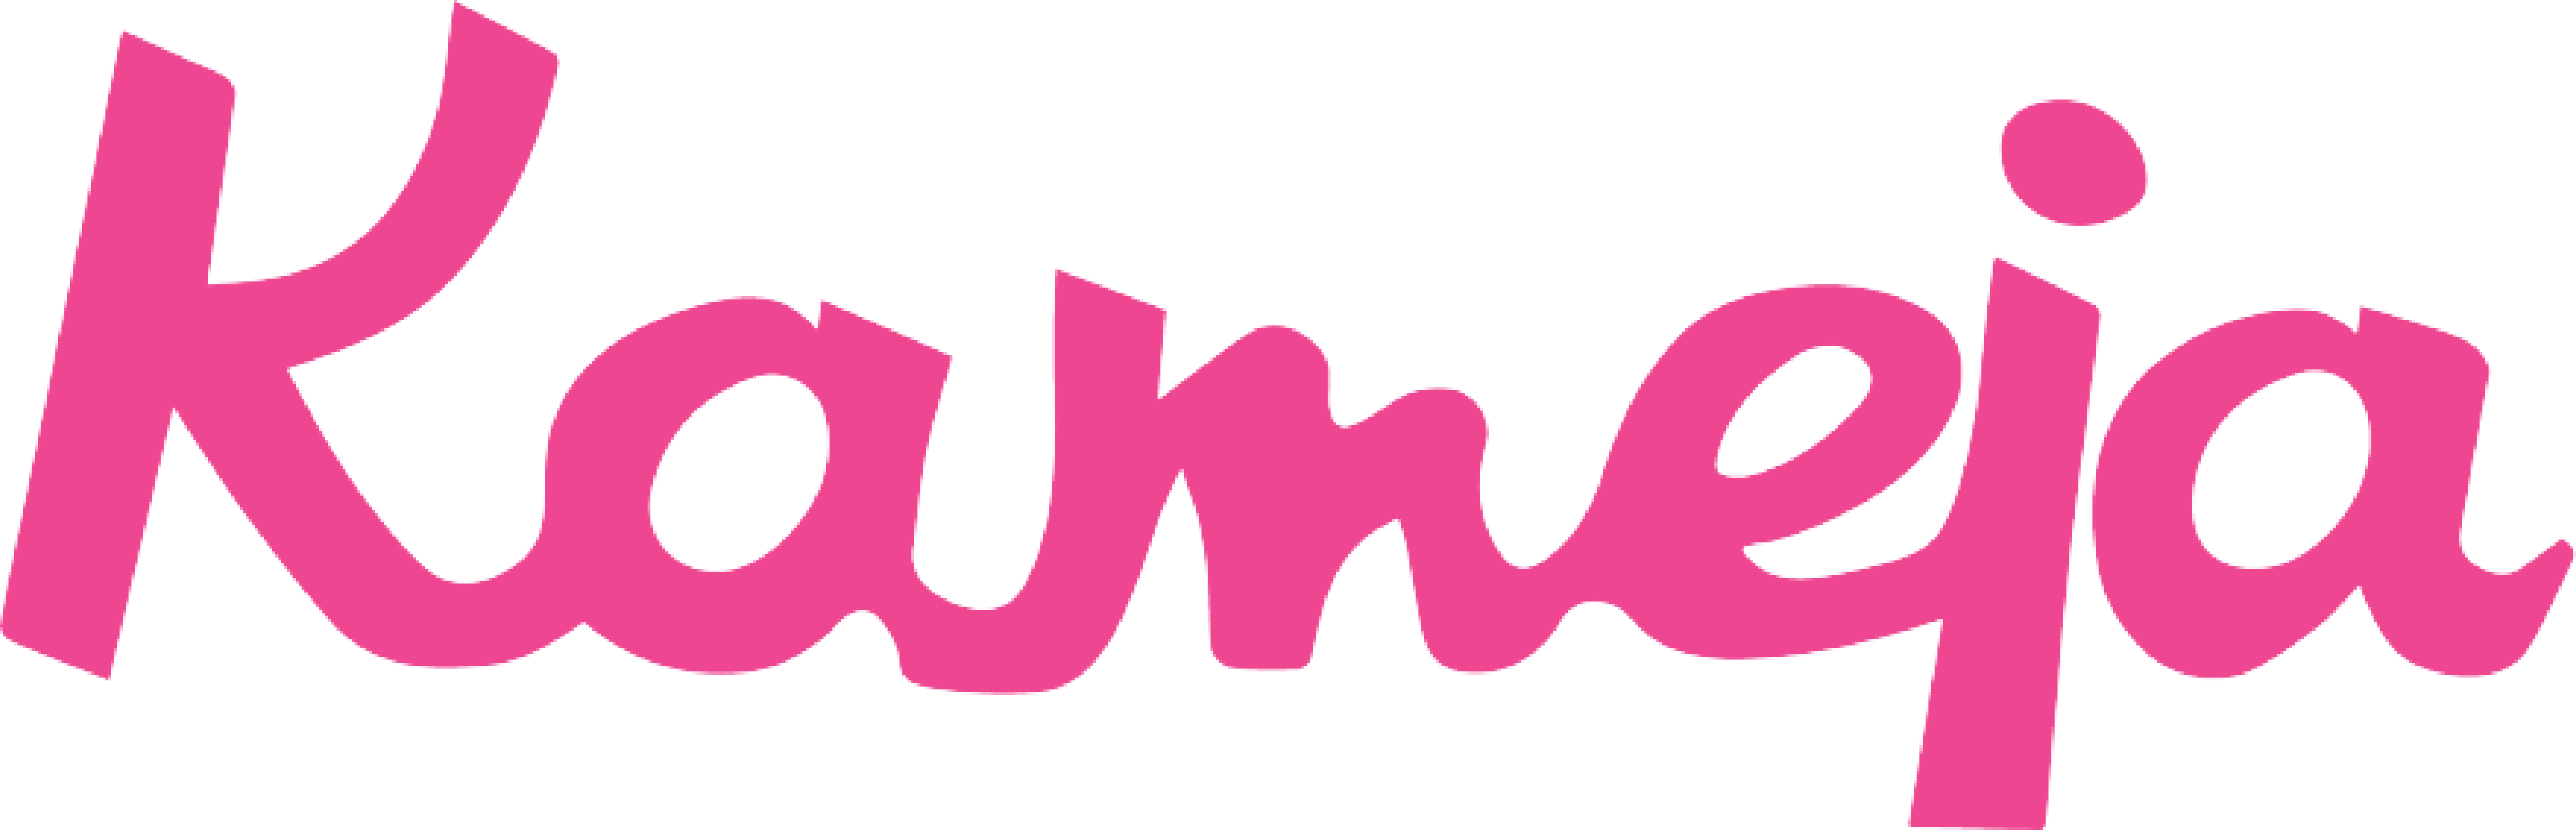 kameja-logo